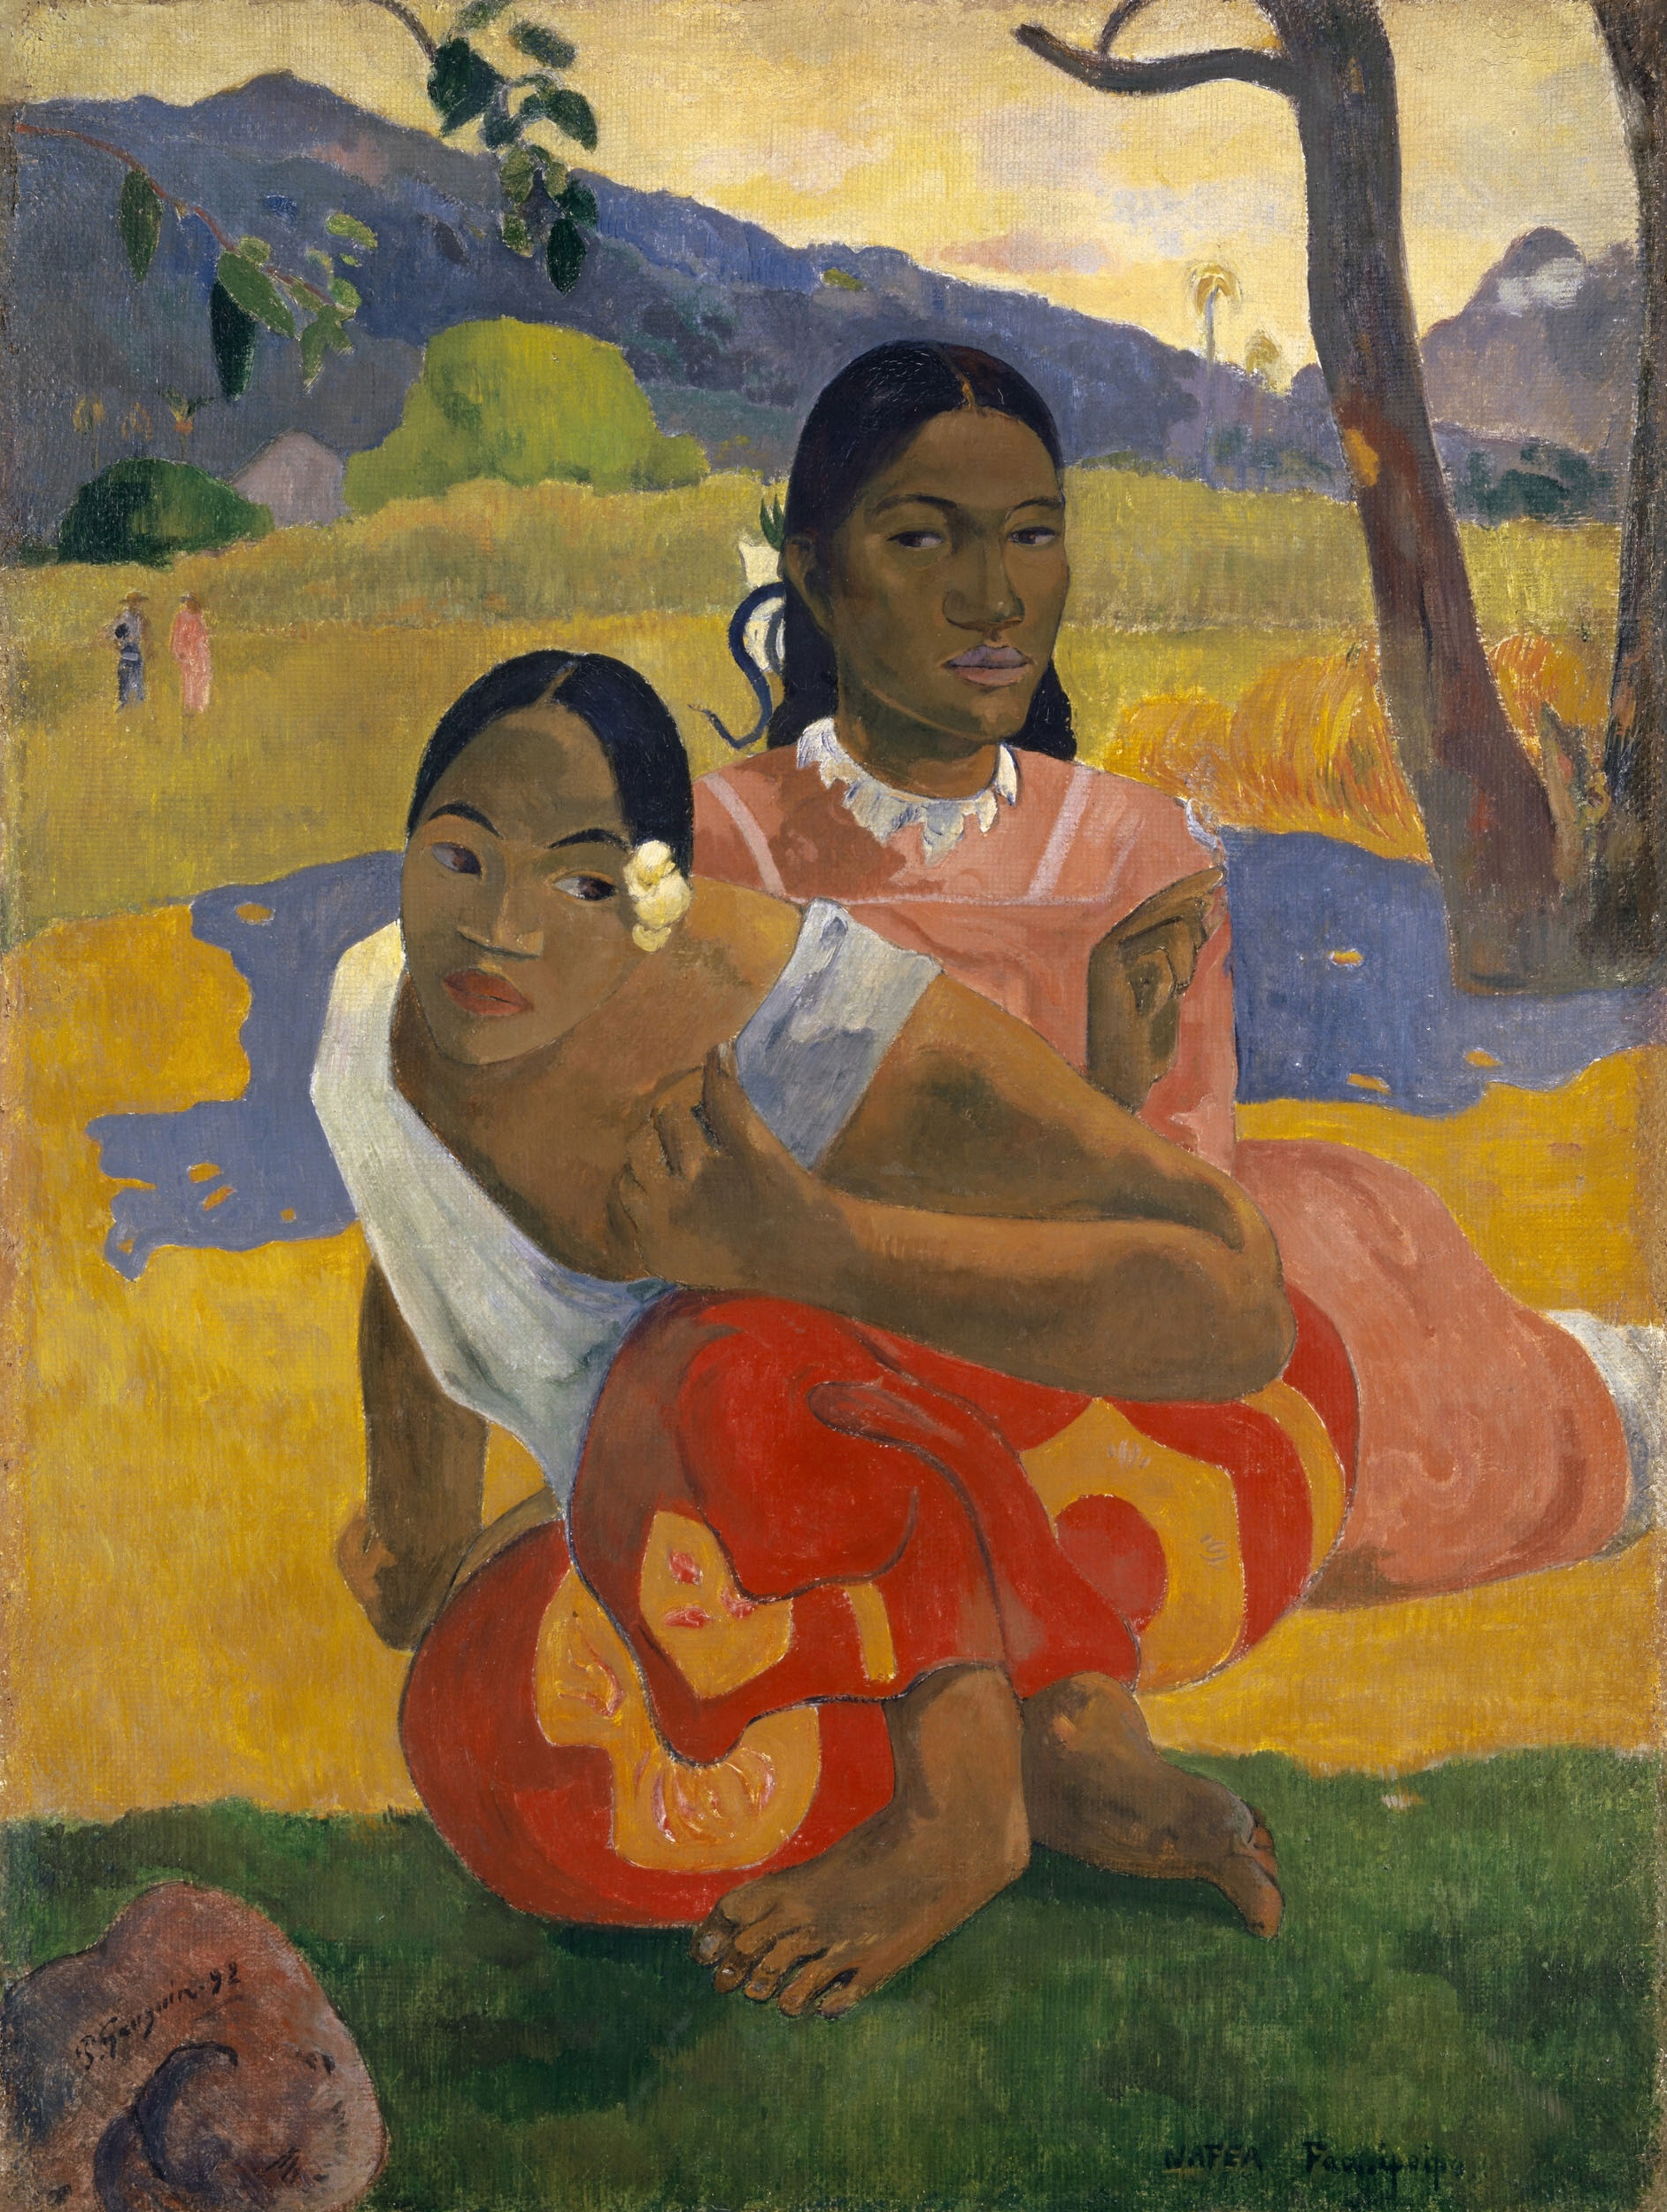 Mikor házasodsz meg? by Paul Gauguin - 1892 - 101 cm x 77 cm 